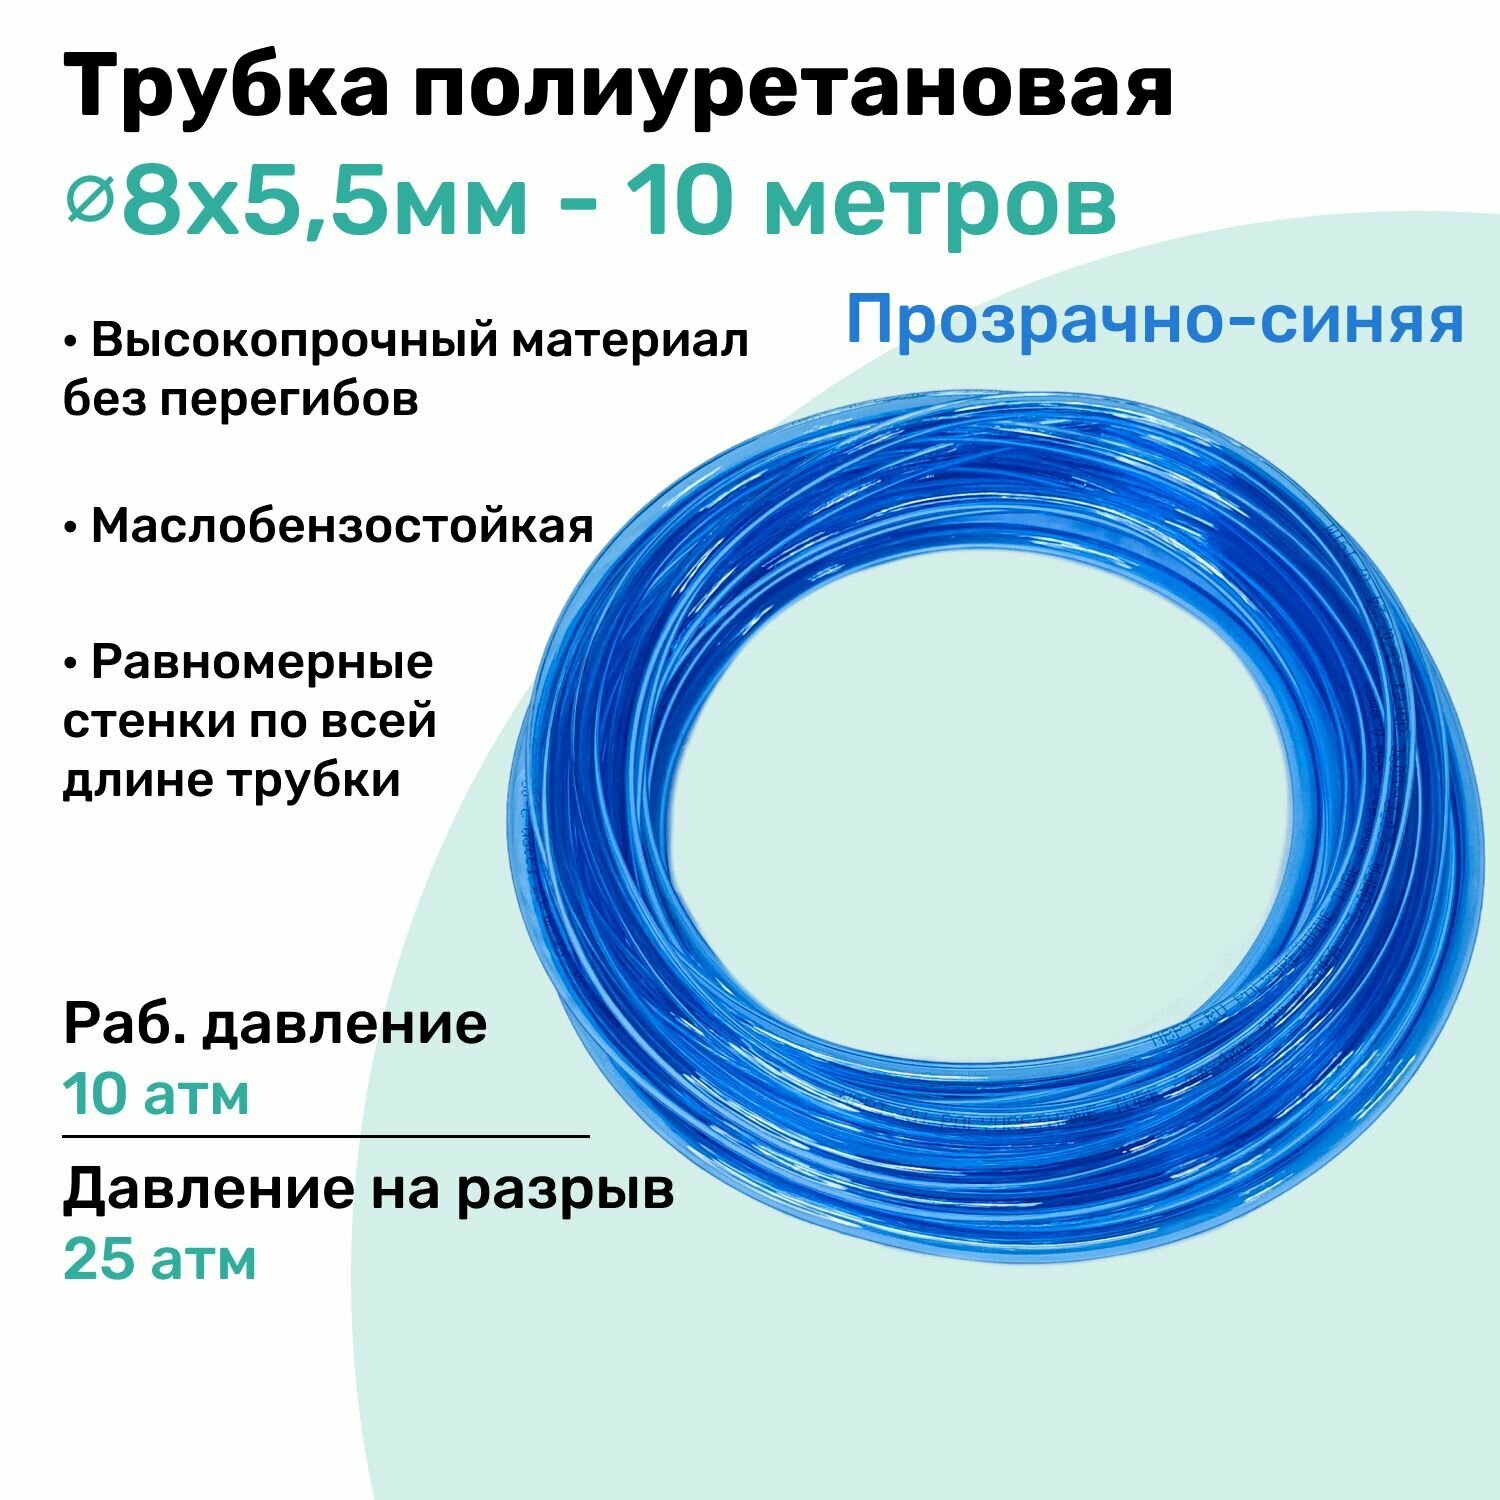 Трубка пневматическая полиуретановая 8х5,5мм - 10м, маслобензостойкая, воздушная, Пневмошланг NBPT, Прозрачно-синяя